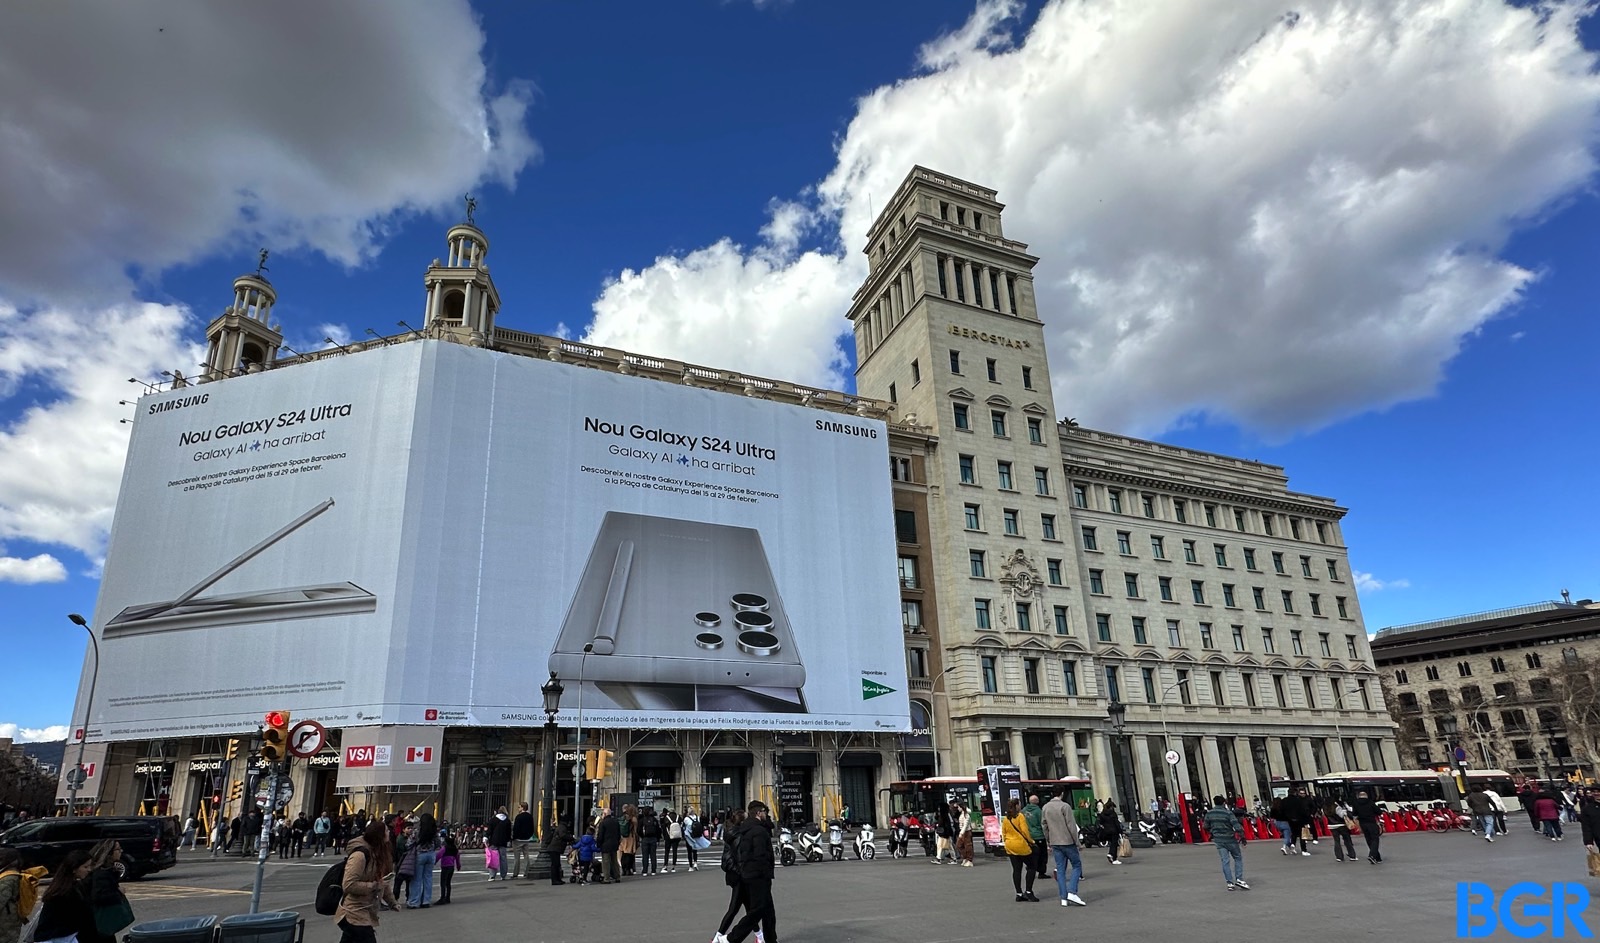 La grande affiche du Galaxy S24 de Samsung a occupé la moitié d'un immeuble à Barcelone, en Espagne.  Le magasin phare d'Apple se trouve au rez-de-chaussée de l'autre moitié.